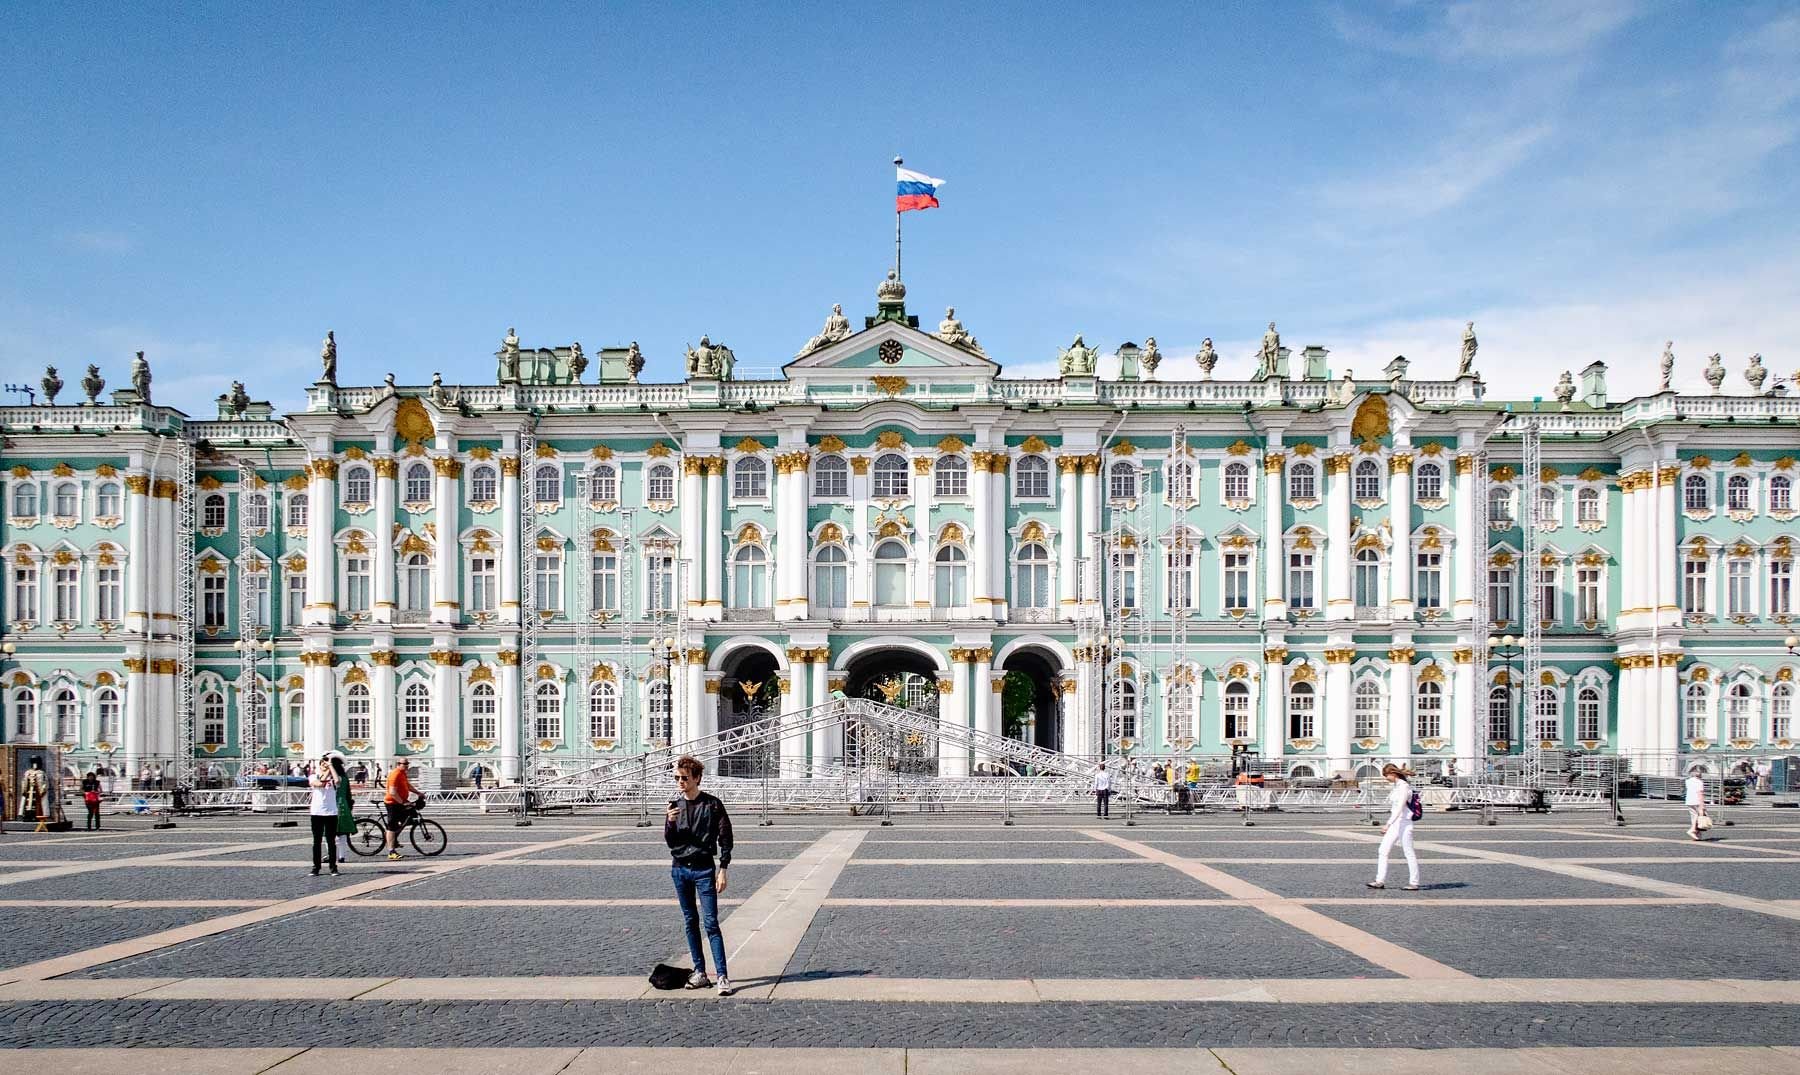 Зимний дворец Санкт-Петербург HD